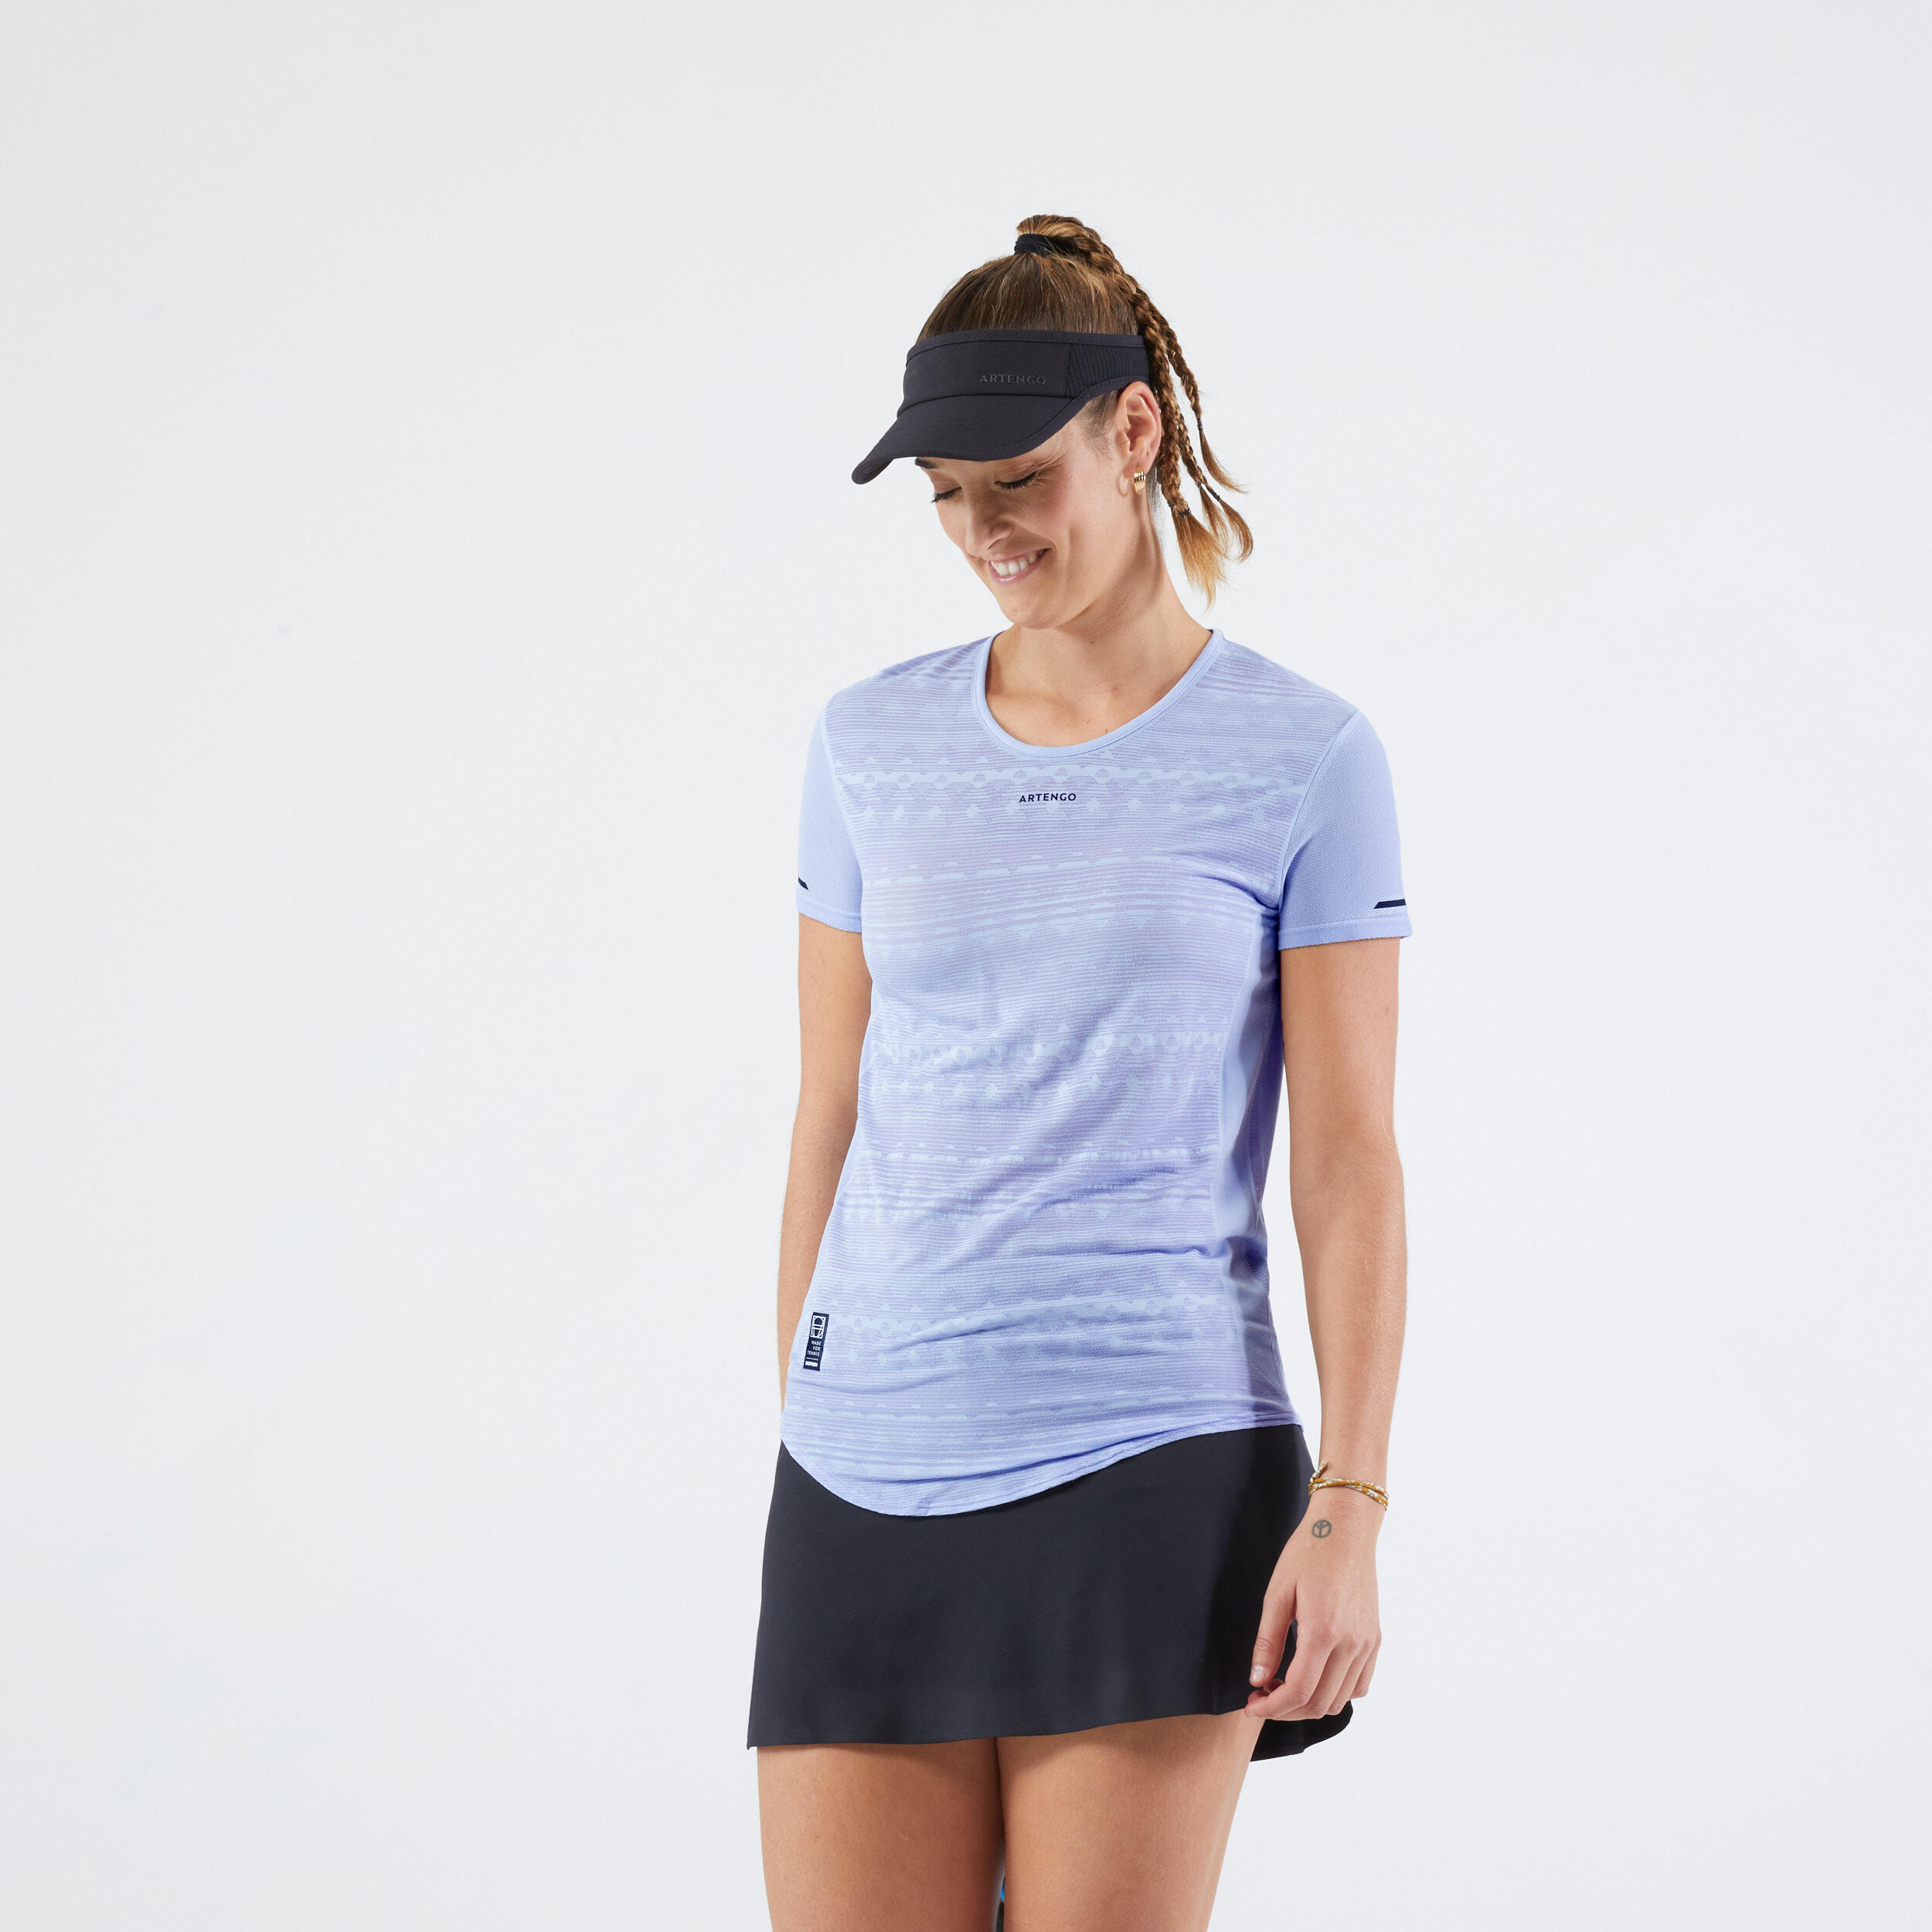 ARTENGO Women's Lightweight Tennis T-Shirt TTS Light - Lavender Blue